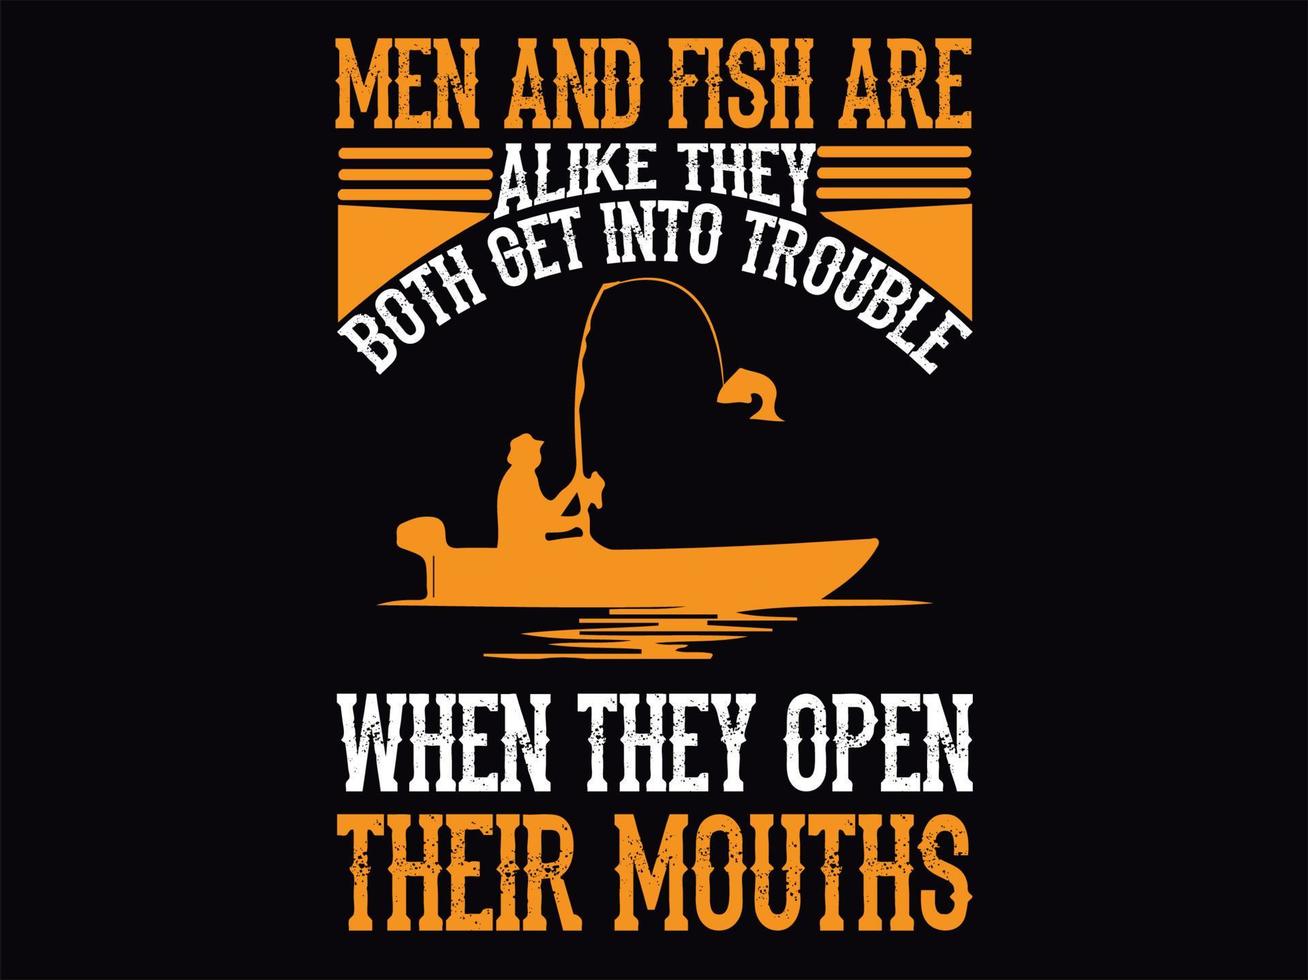 arquivo de design de camiseta de pesca vetor